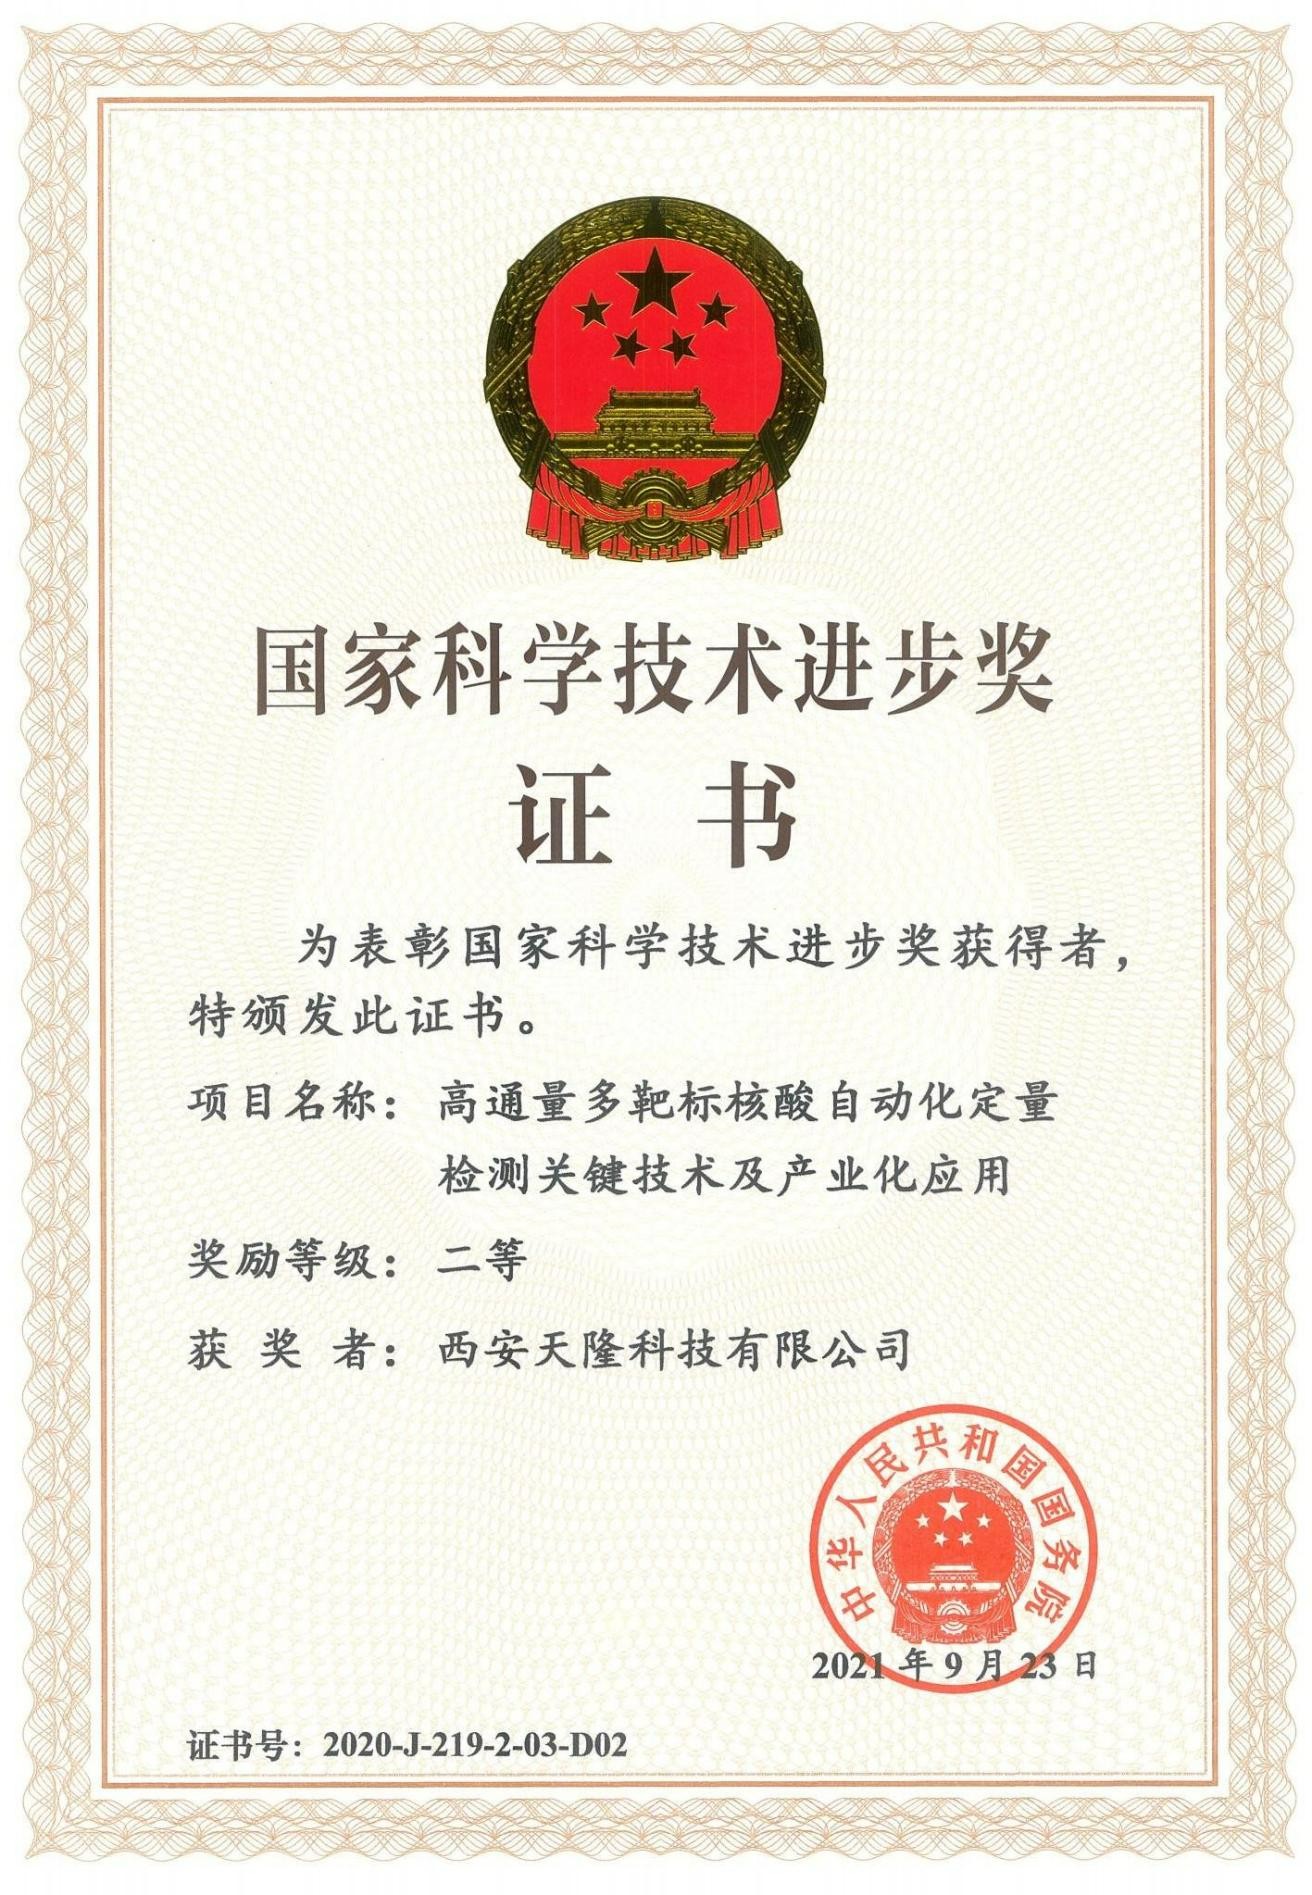 Prix ​​national du progrès scientifique et technologique de la Chine (Xi''an Tianlong)